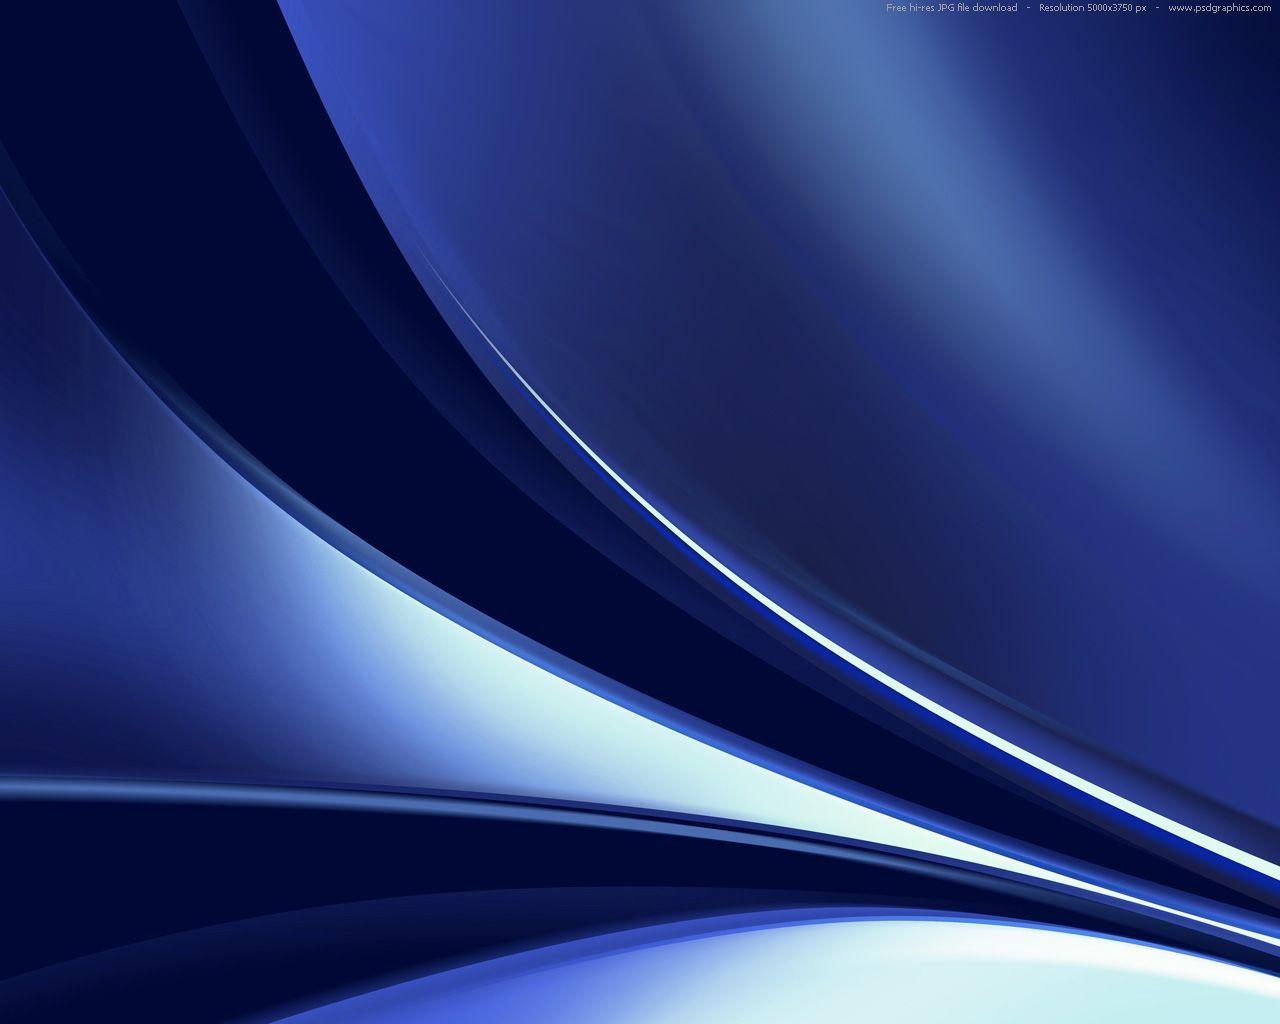 Dark Abstract Background. Abstract dark blue background